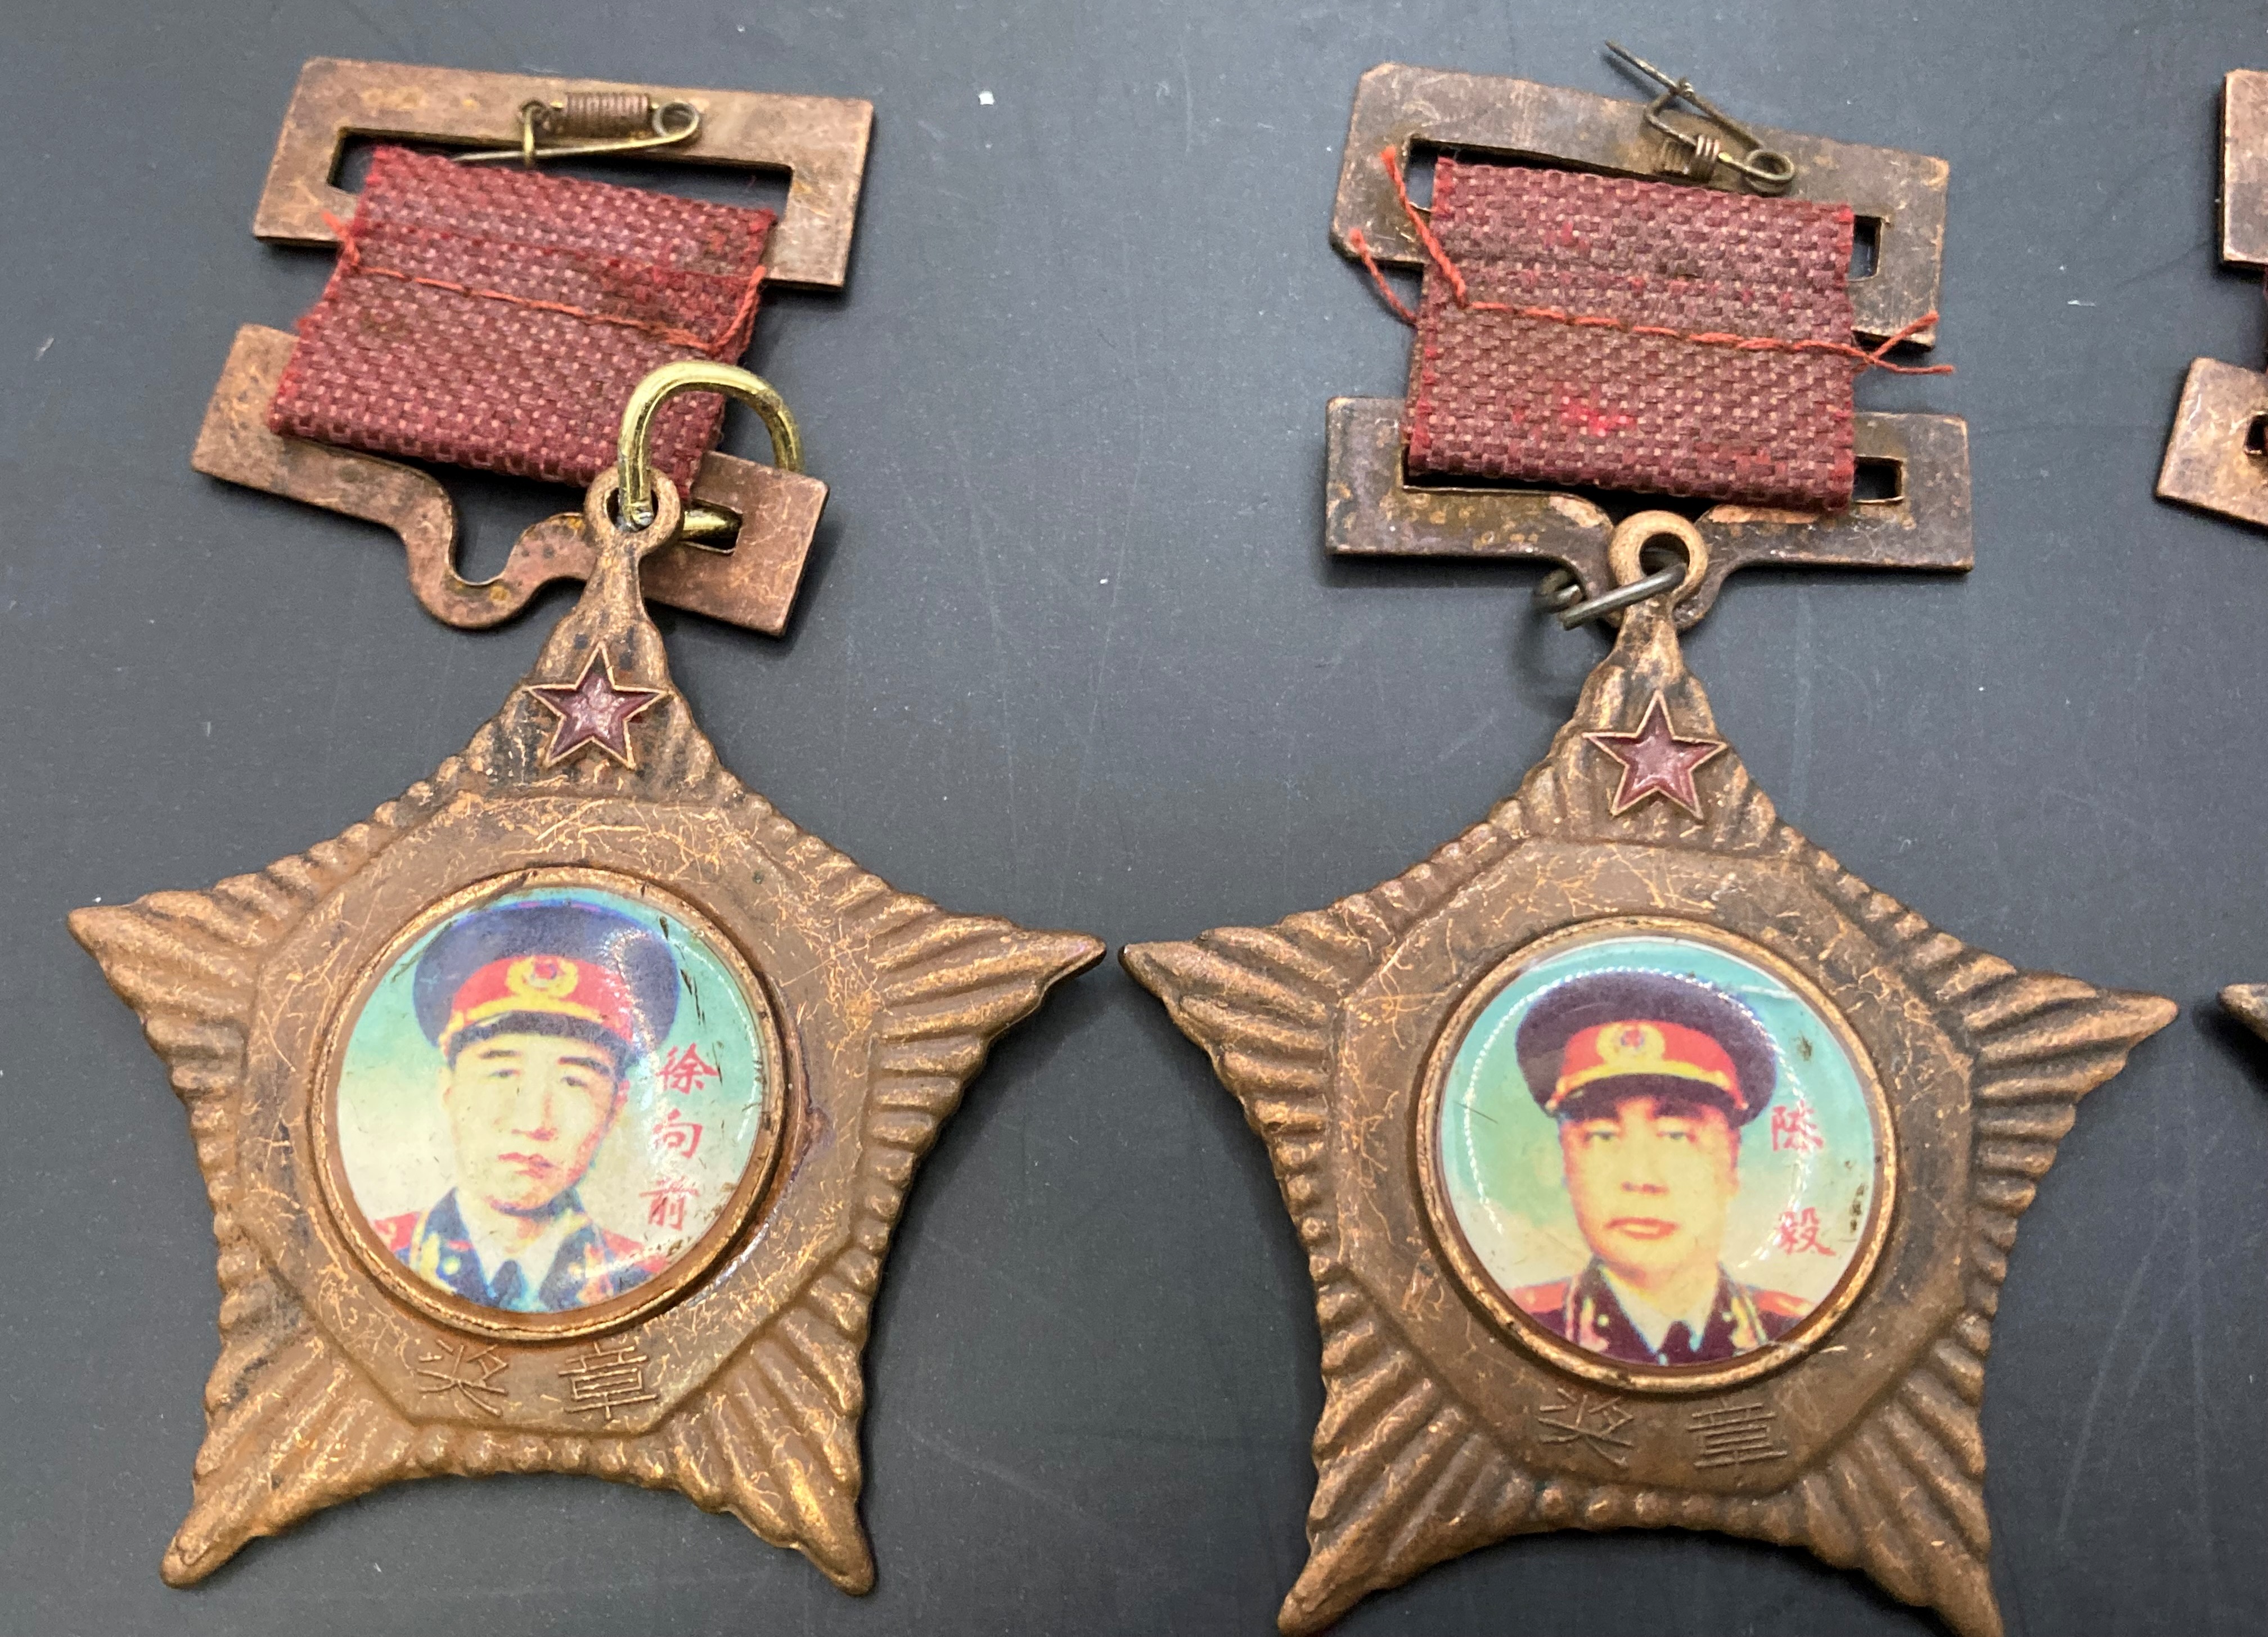 Seven Chinese 'Ten Generals' medals (Saleroom location: S33 GC4) - Image 4 of 6